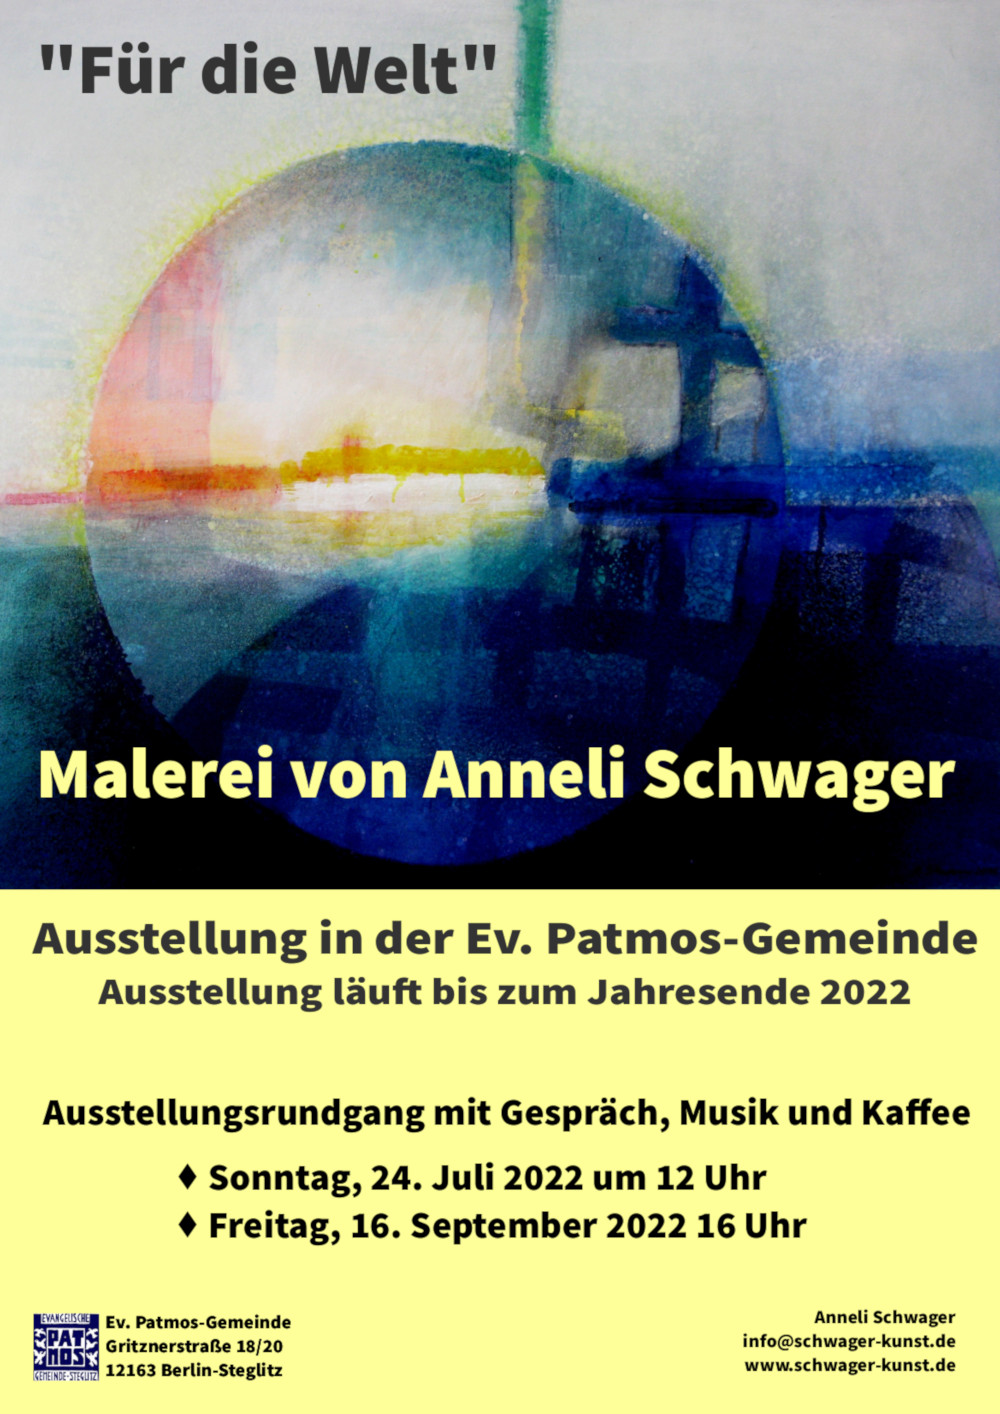 Einladungsplakat zu den beiden Rundgängen mit der Künstlerin Anneli Schwager. Bild: Licht in der Finsternis 2016-19, Mischtechnik, Leinwand, 80x90 cm